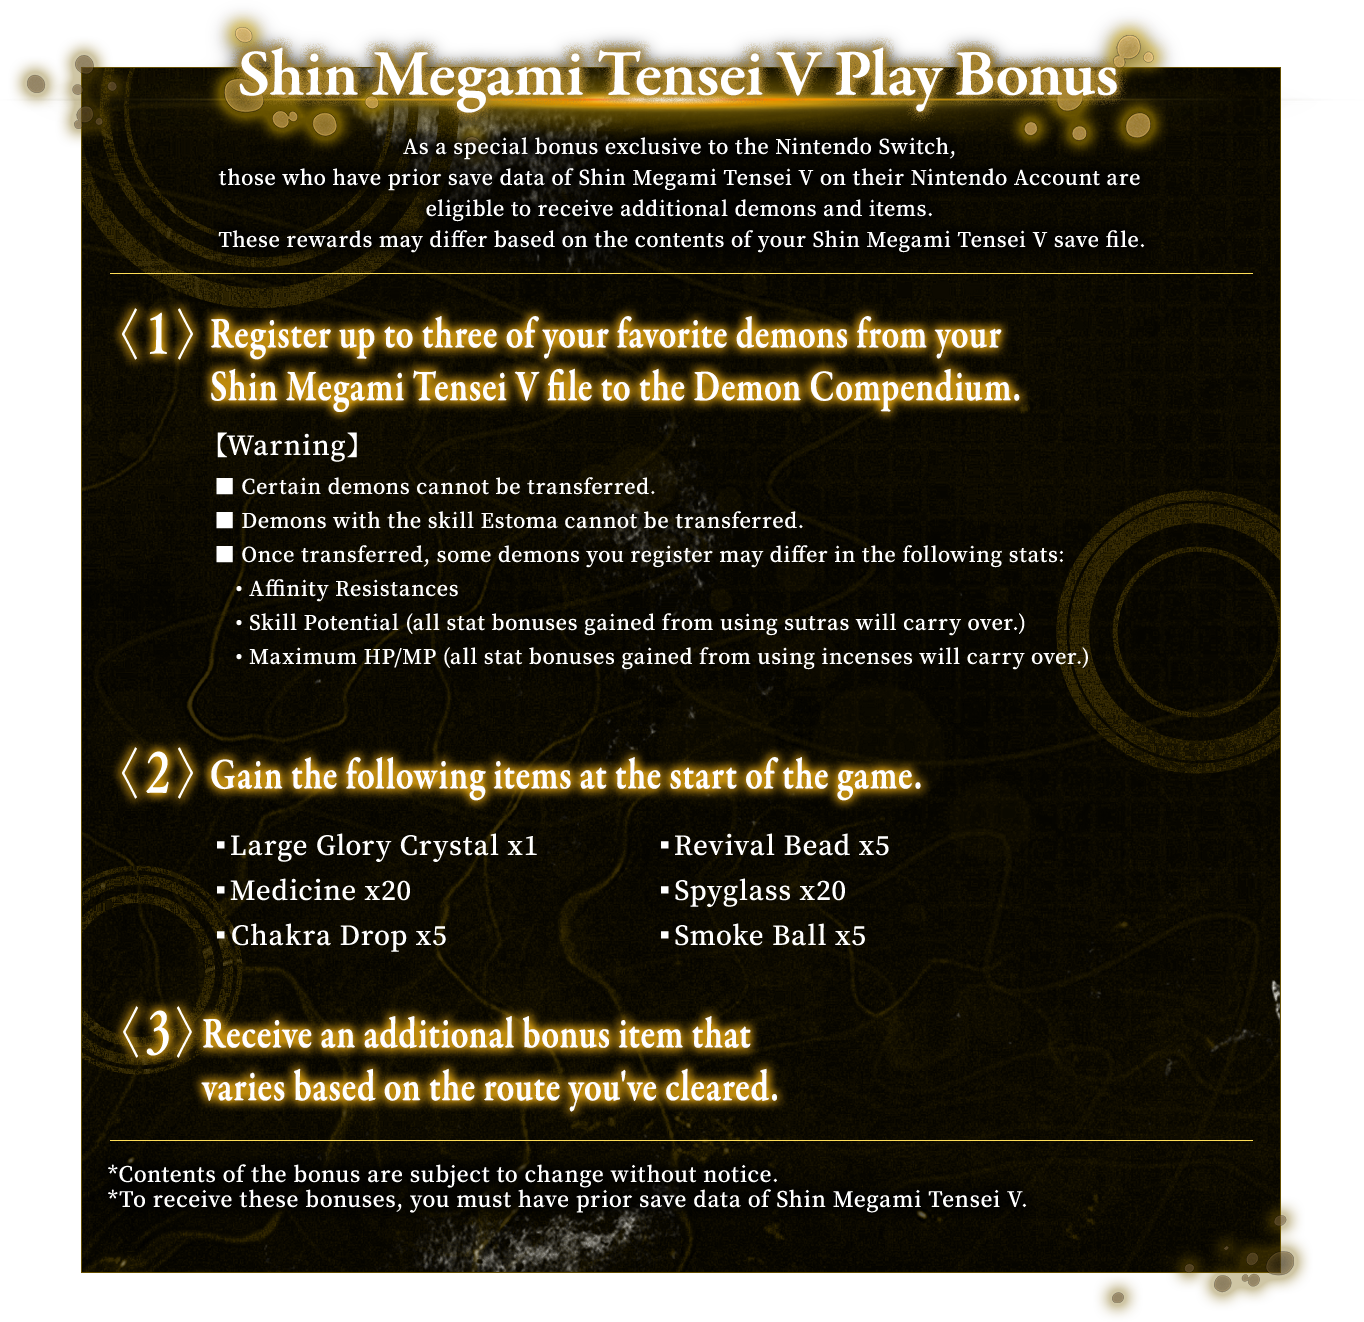 Shin Megami Tensei V Play Bonus